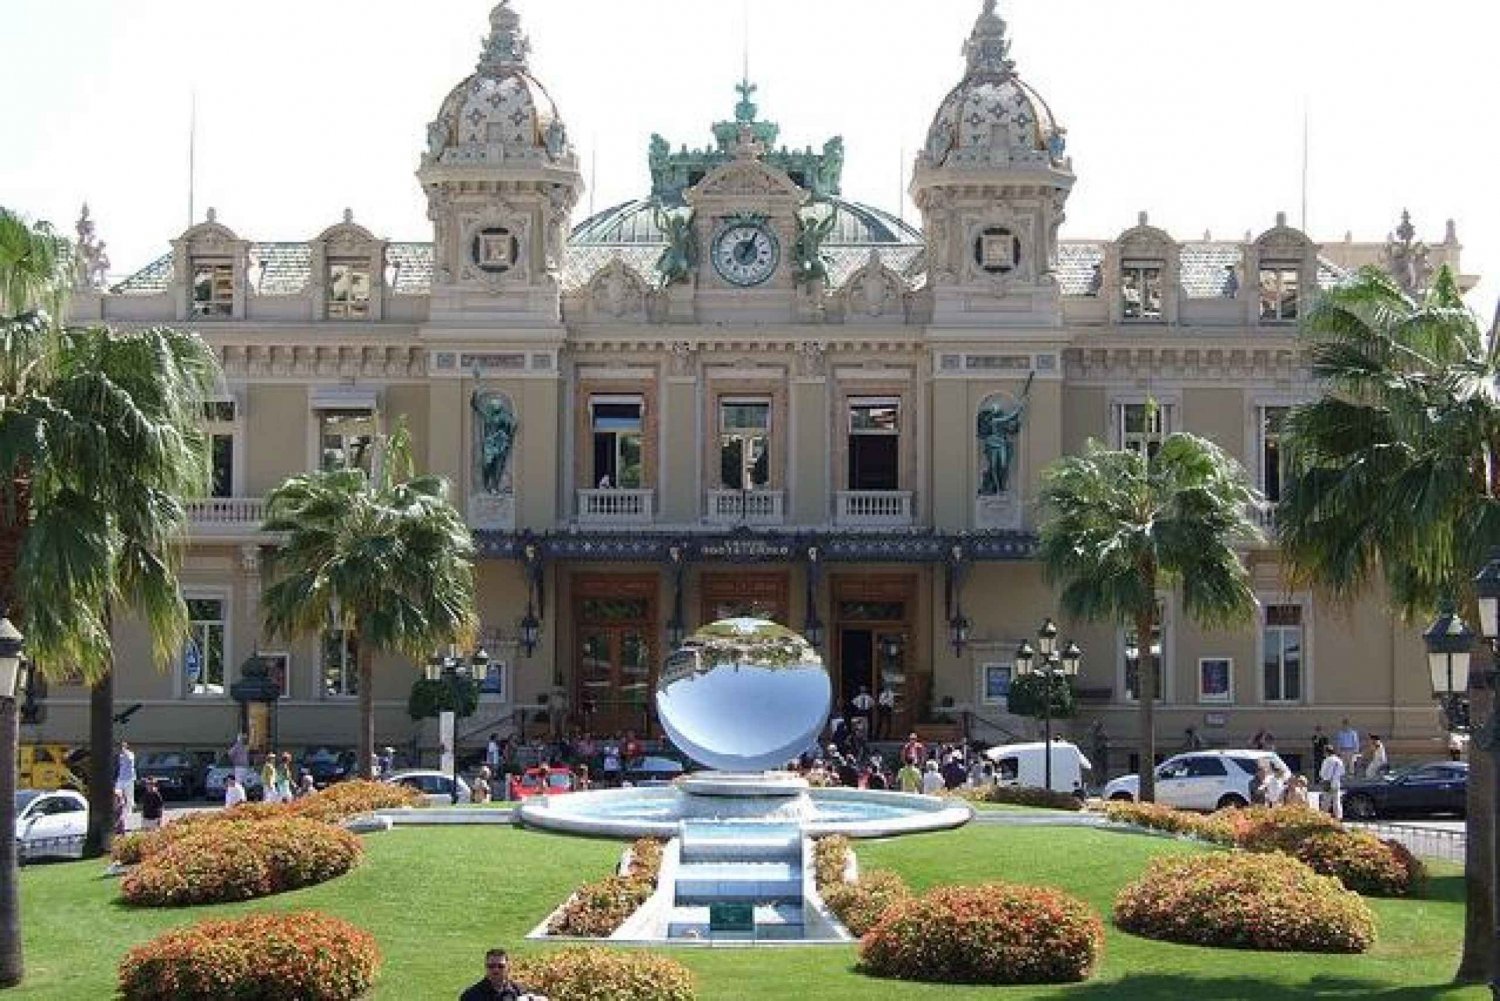 Au départ de Villefranche : Excursion privée à Monaco et Eze